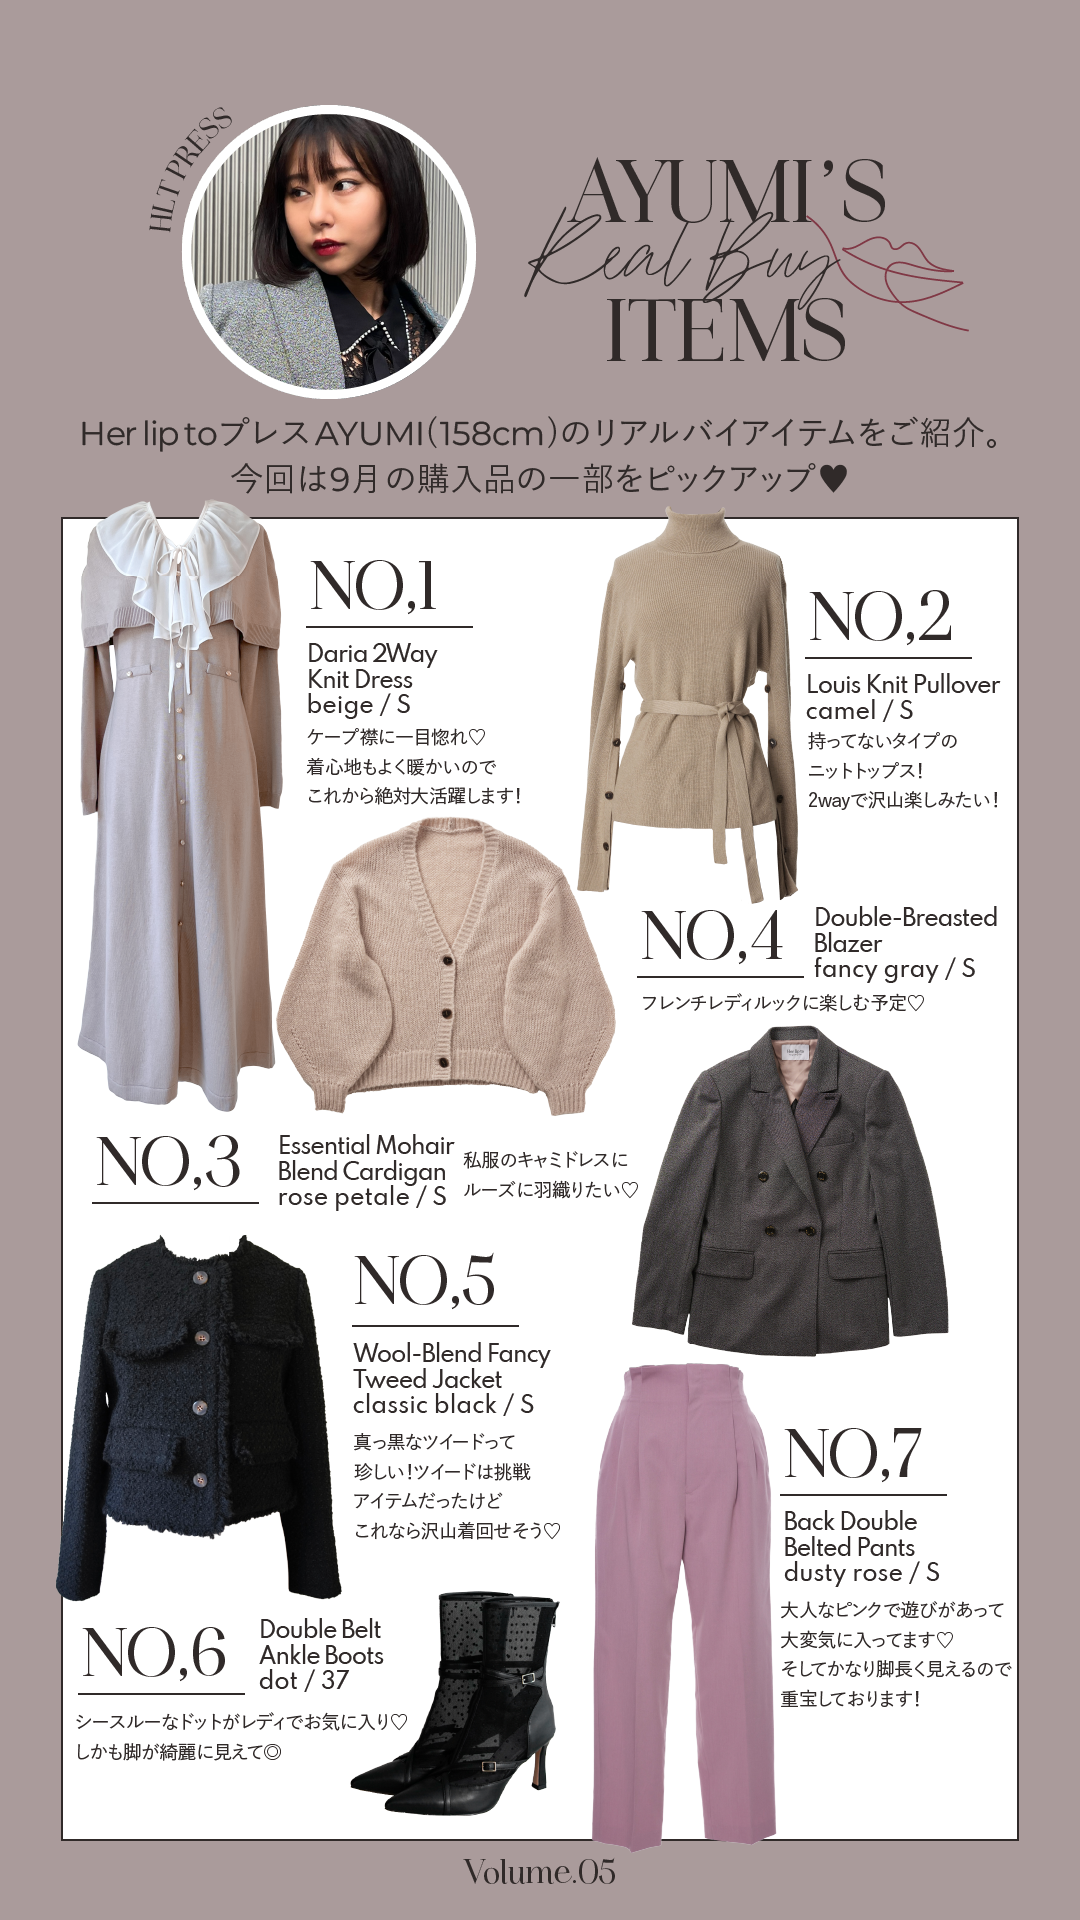 Herlipto Wool-Blend Fancy Tweed Jacket 「新製品は安い」 レディース